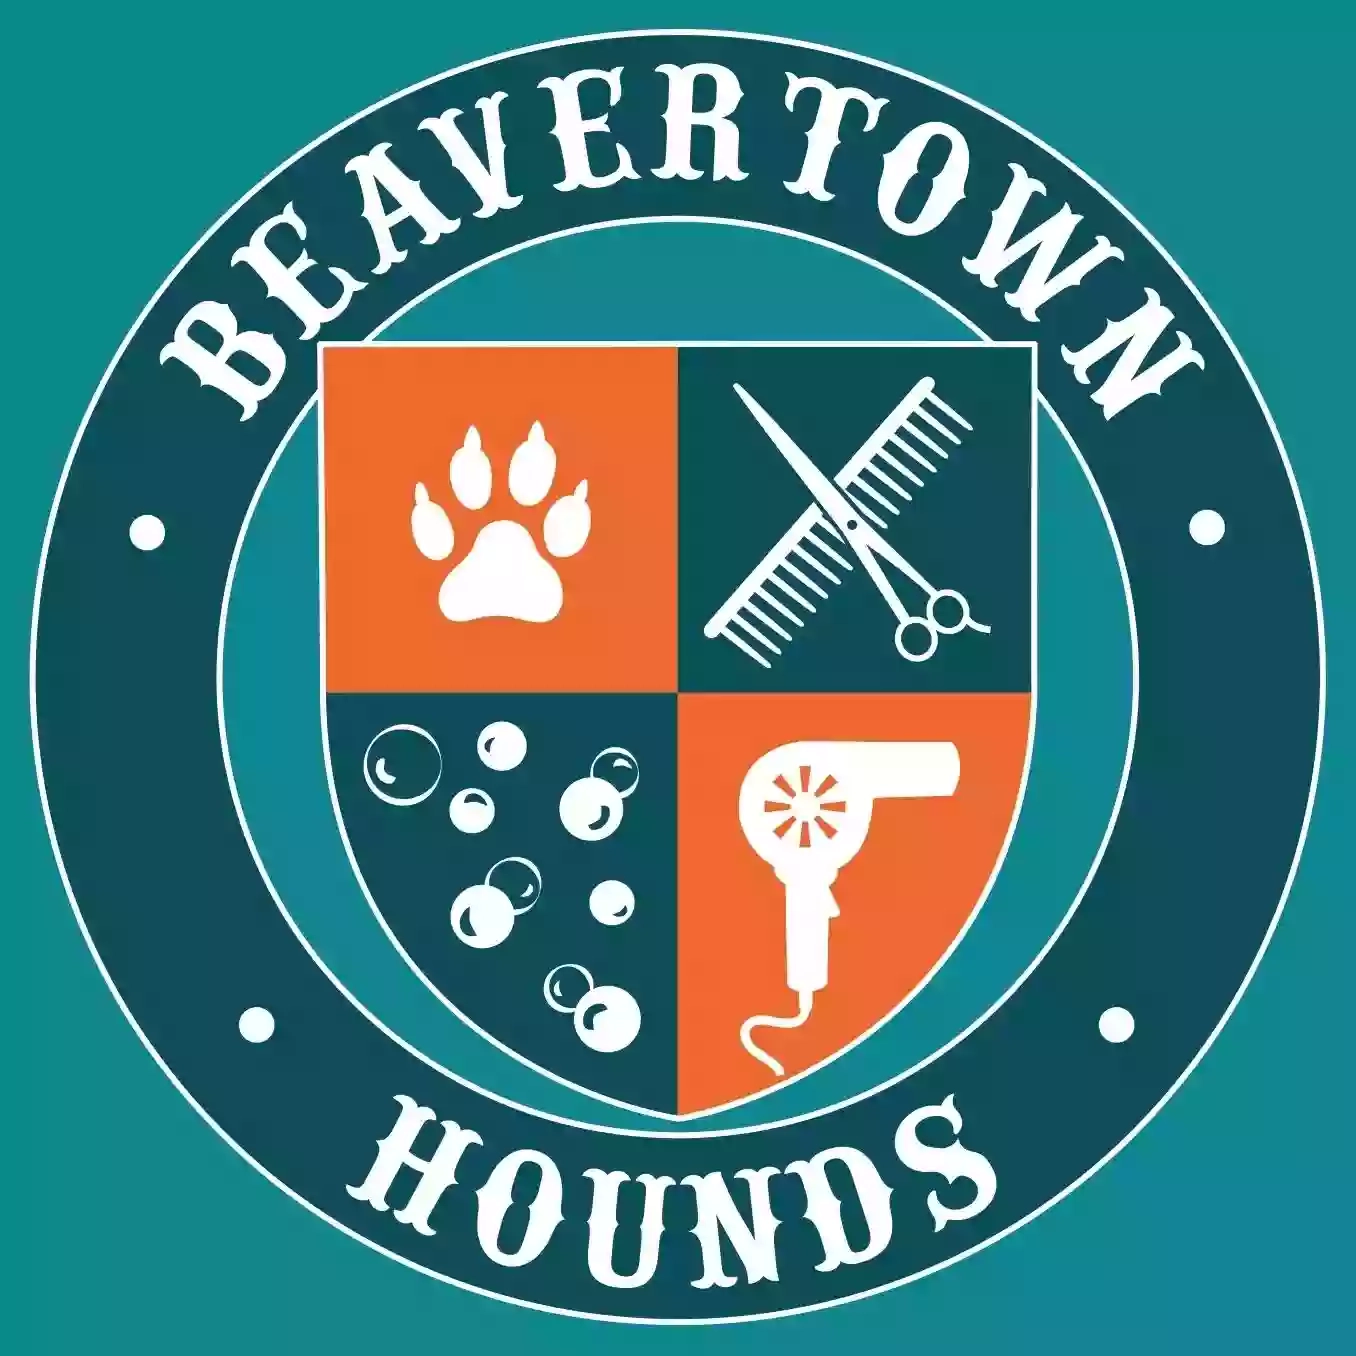 Beavertown Hounds